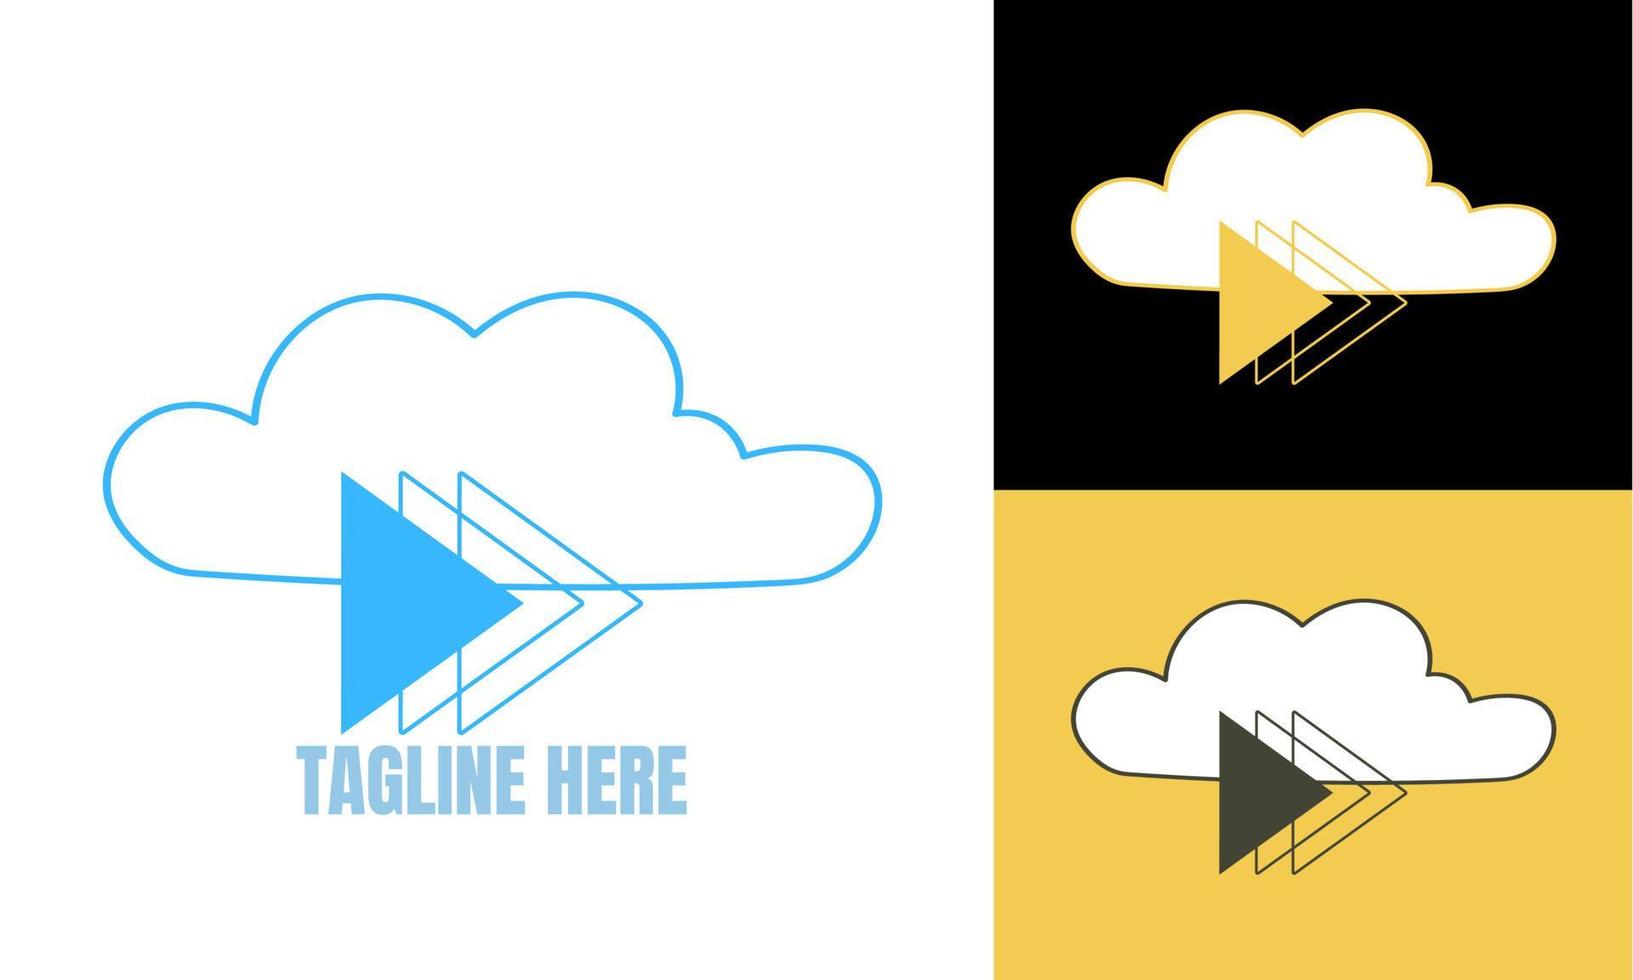 nube logo design vettore. marca identità emblema vettore